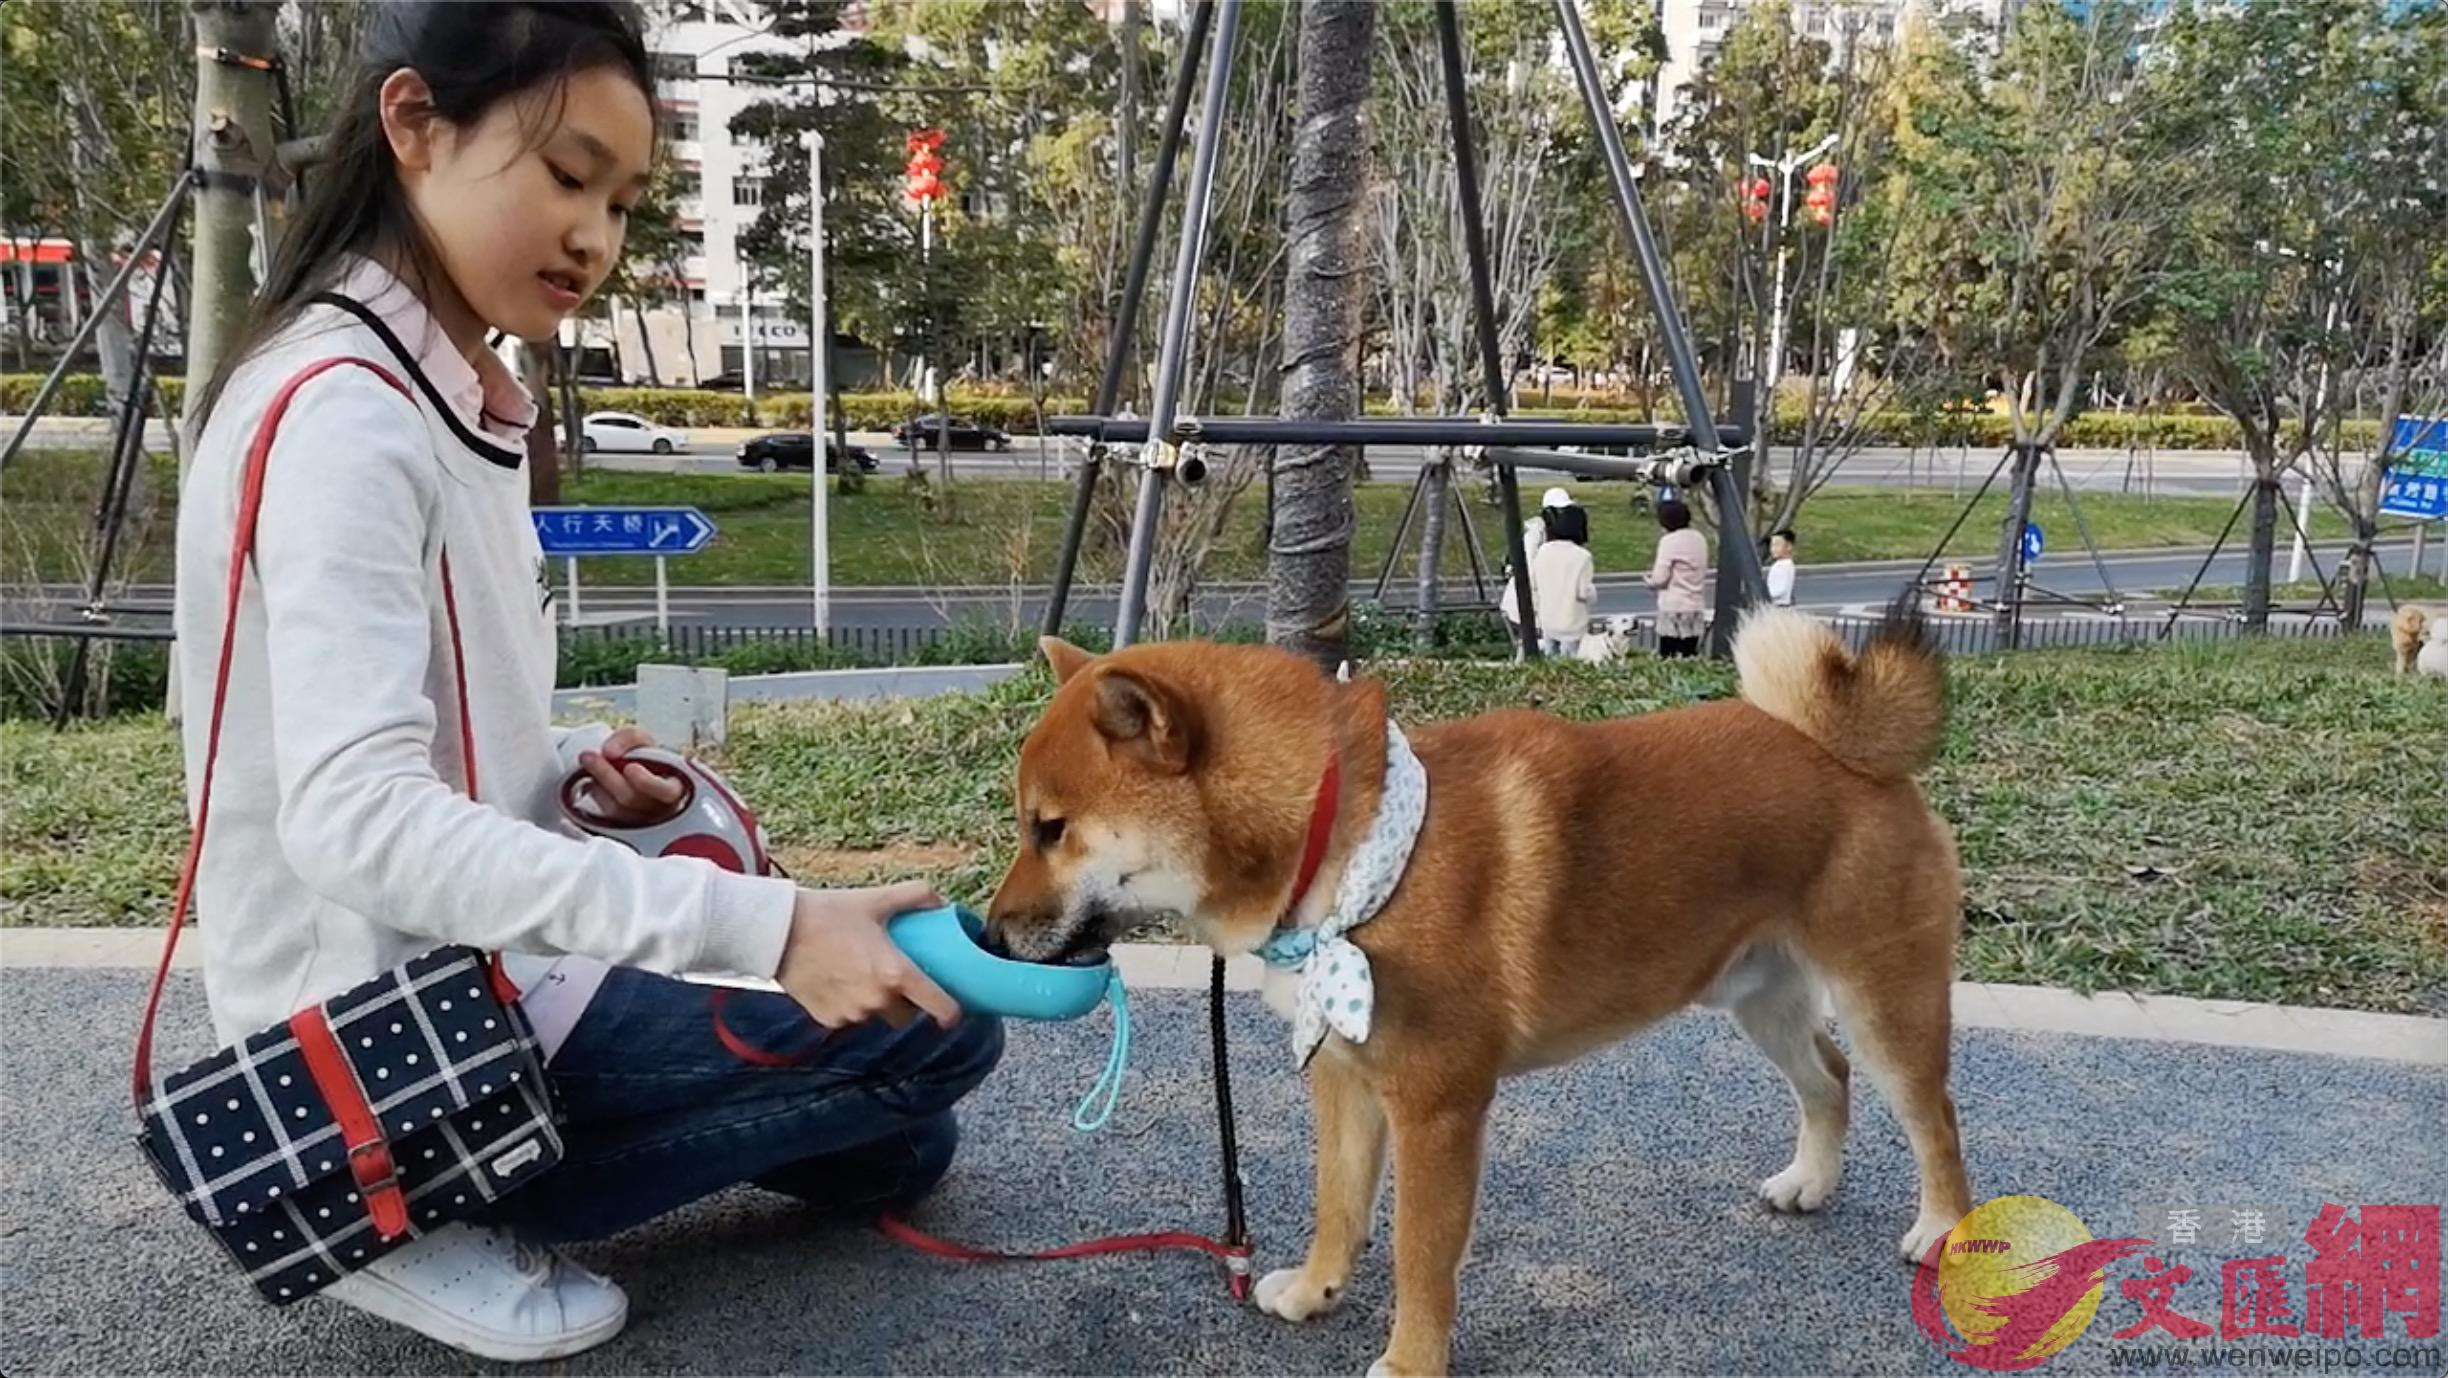 寵物主人與寵物在公園內互動C]實習記者 胡永愛攝^